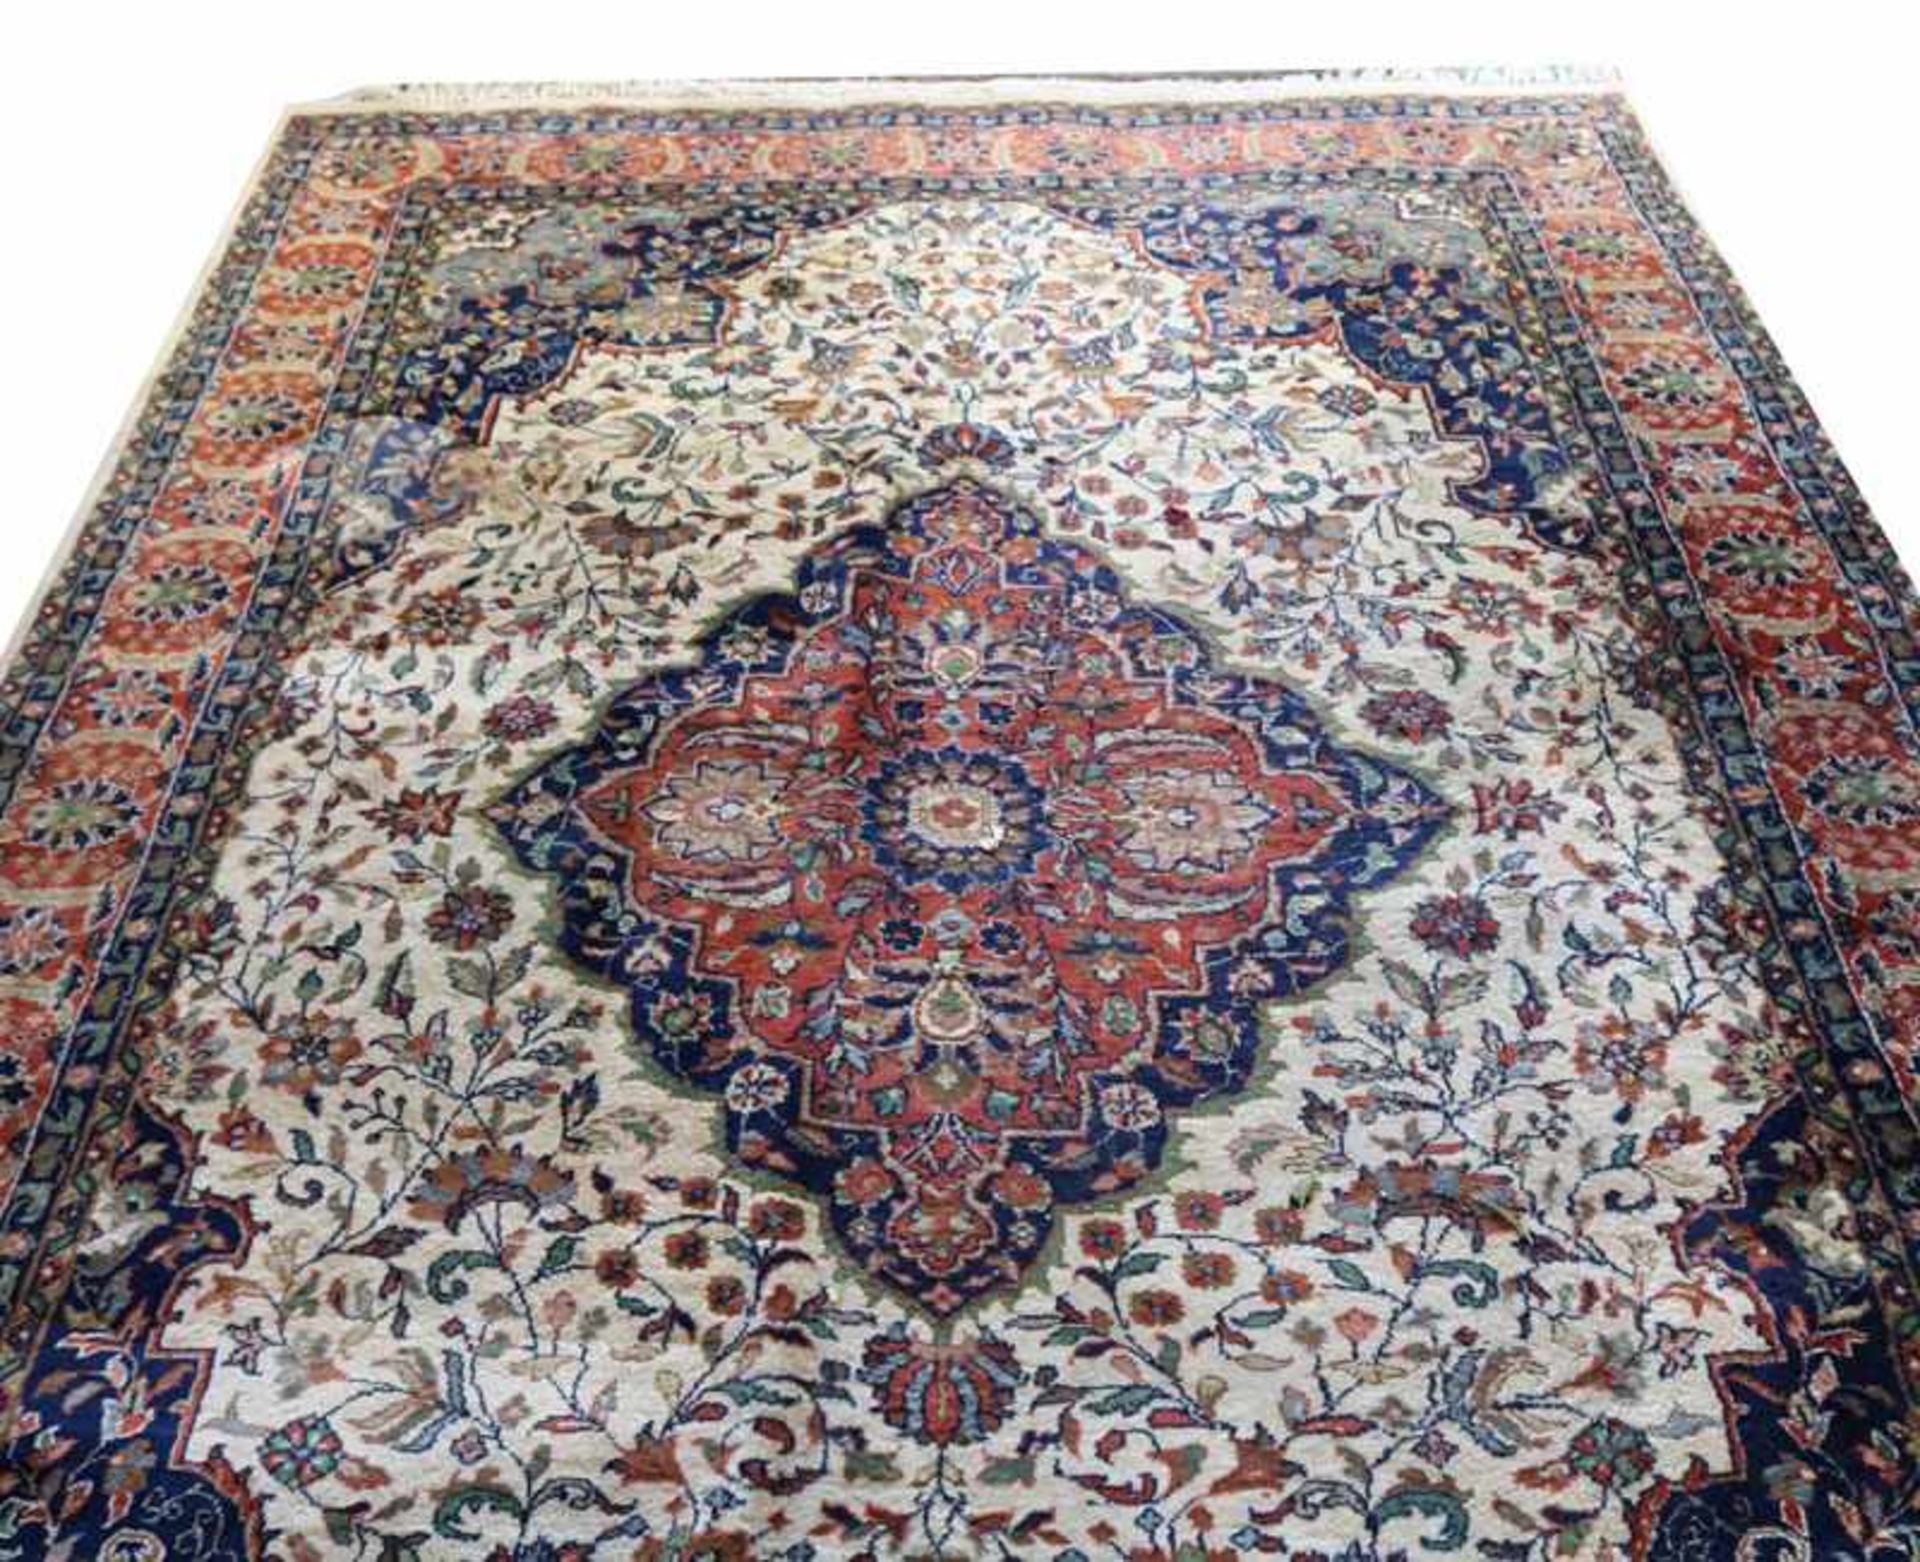 Teppich, Keshan, Indien, blau/beige/rot, 294 cm x 209 cm, Gebrauchsspuren, fleckig